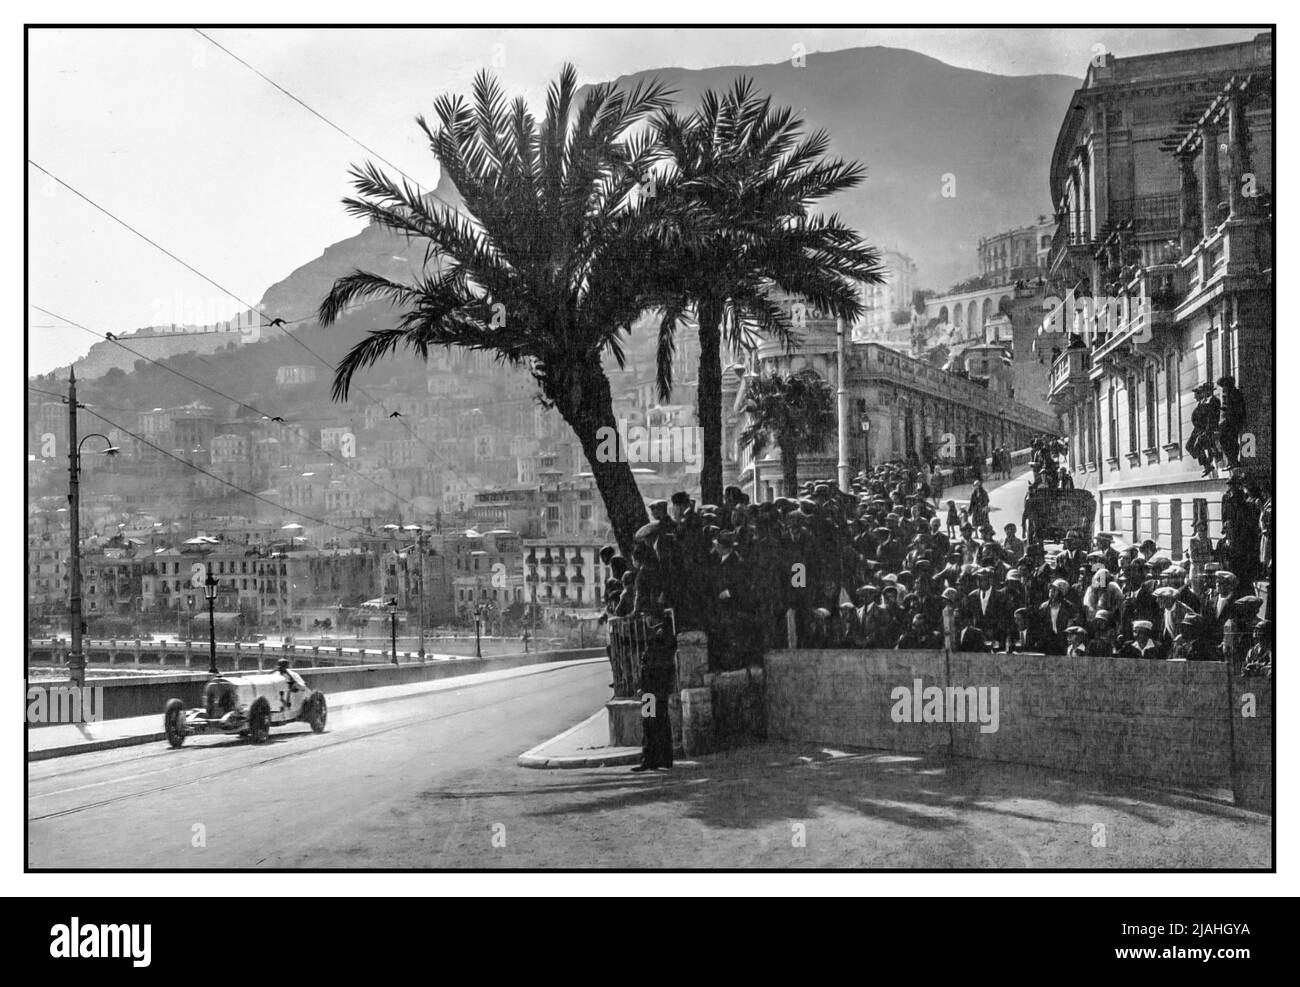 1929 großer Preis von Monaco der erste in Monaco mit Rudolf Caracciola im Mercedes-Benz SSK (W06) mit der Startnummer 34, einem Roadster des deutschen Automobilherstellers Mercedes-Benz zwischen 1928 und 1932. Der Name ist eine Abkürzung für Super Sport kurz, deutsch für "Super Sport Short", da es sich um eine kurze Radstandsentwicklung des Mercedes-Benz Modell S handelte.die extreme Performance des SSK und zahlreiche Wettbewerbserfolge machten ihn zu einem der angesehensten Sportwagen seiner Zeit. Rudolf Caracciola wurde Dritter, nachdem er 15. mit einer Stimmabgabe am Start war. Stockfoto